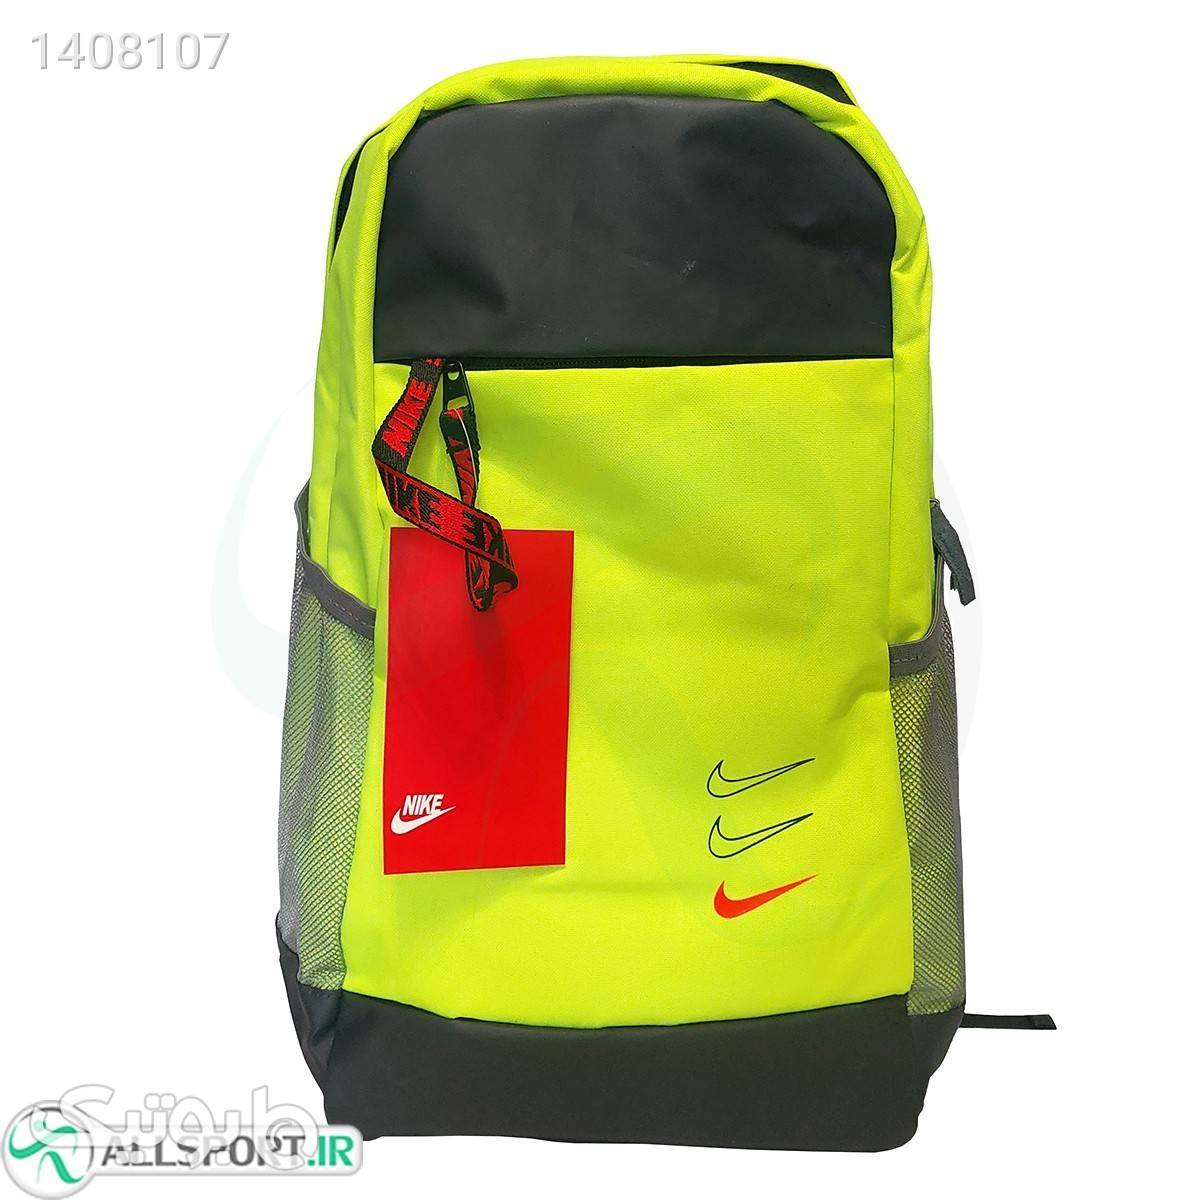 کوله پشتی نایک طرح اصلی Nike backpack Yellow